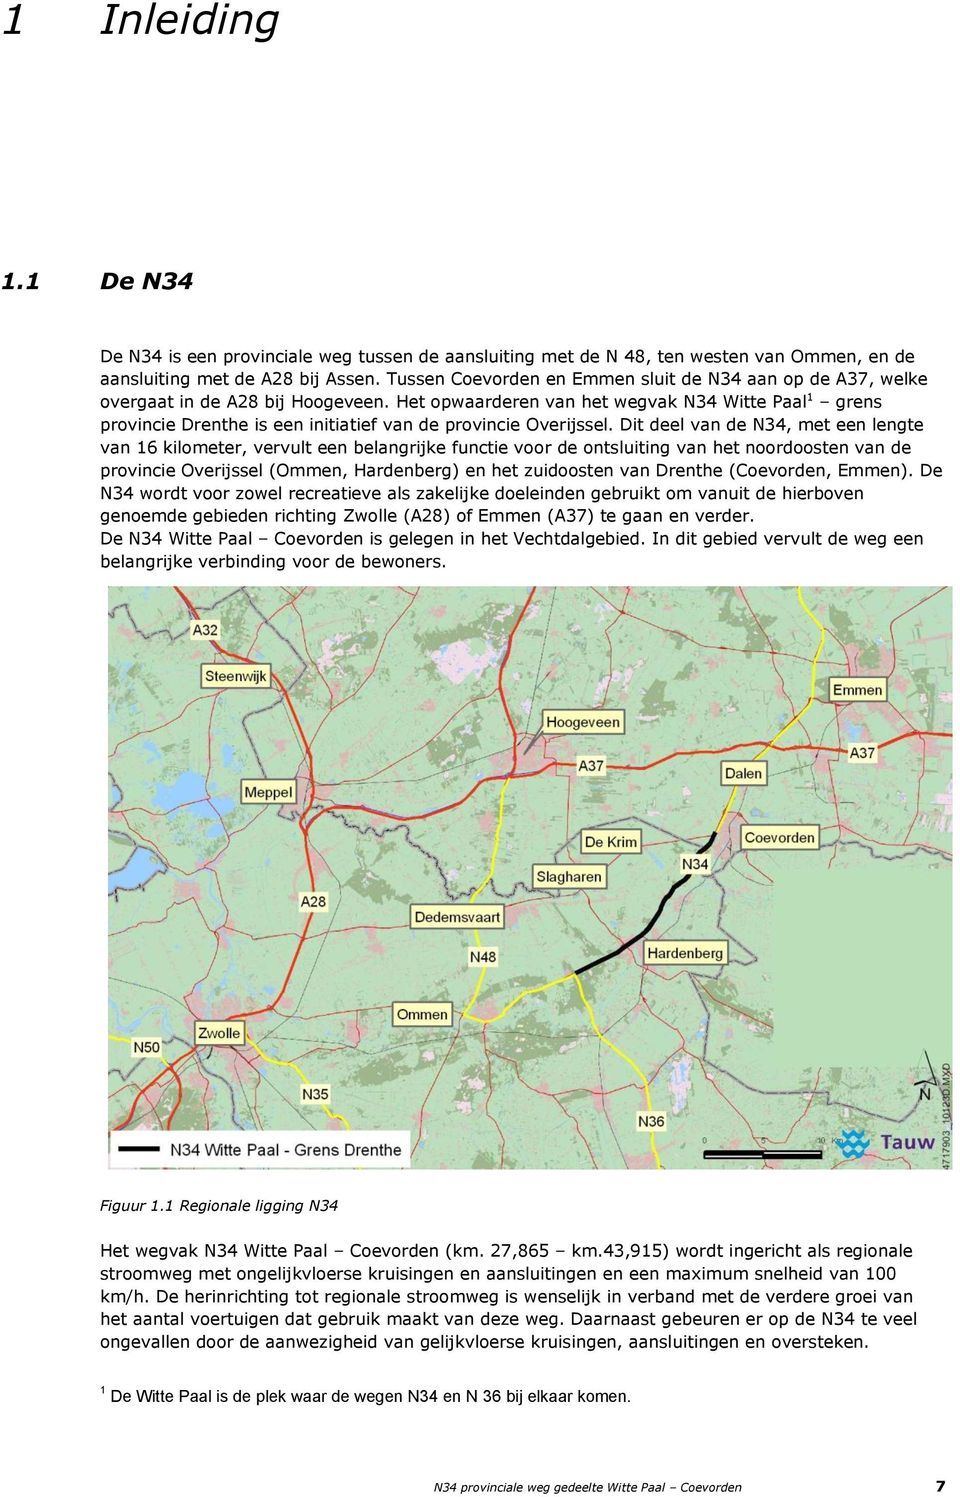 Het opwaarderen van het wegvak N34 Witte Paal 1 grens provincie Drenthe is een initiatief van de provincie Overijssel.